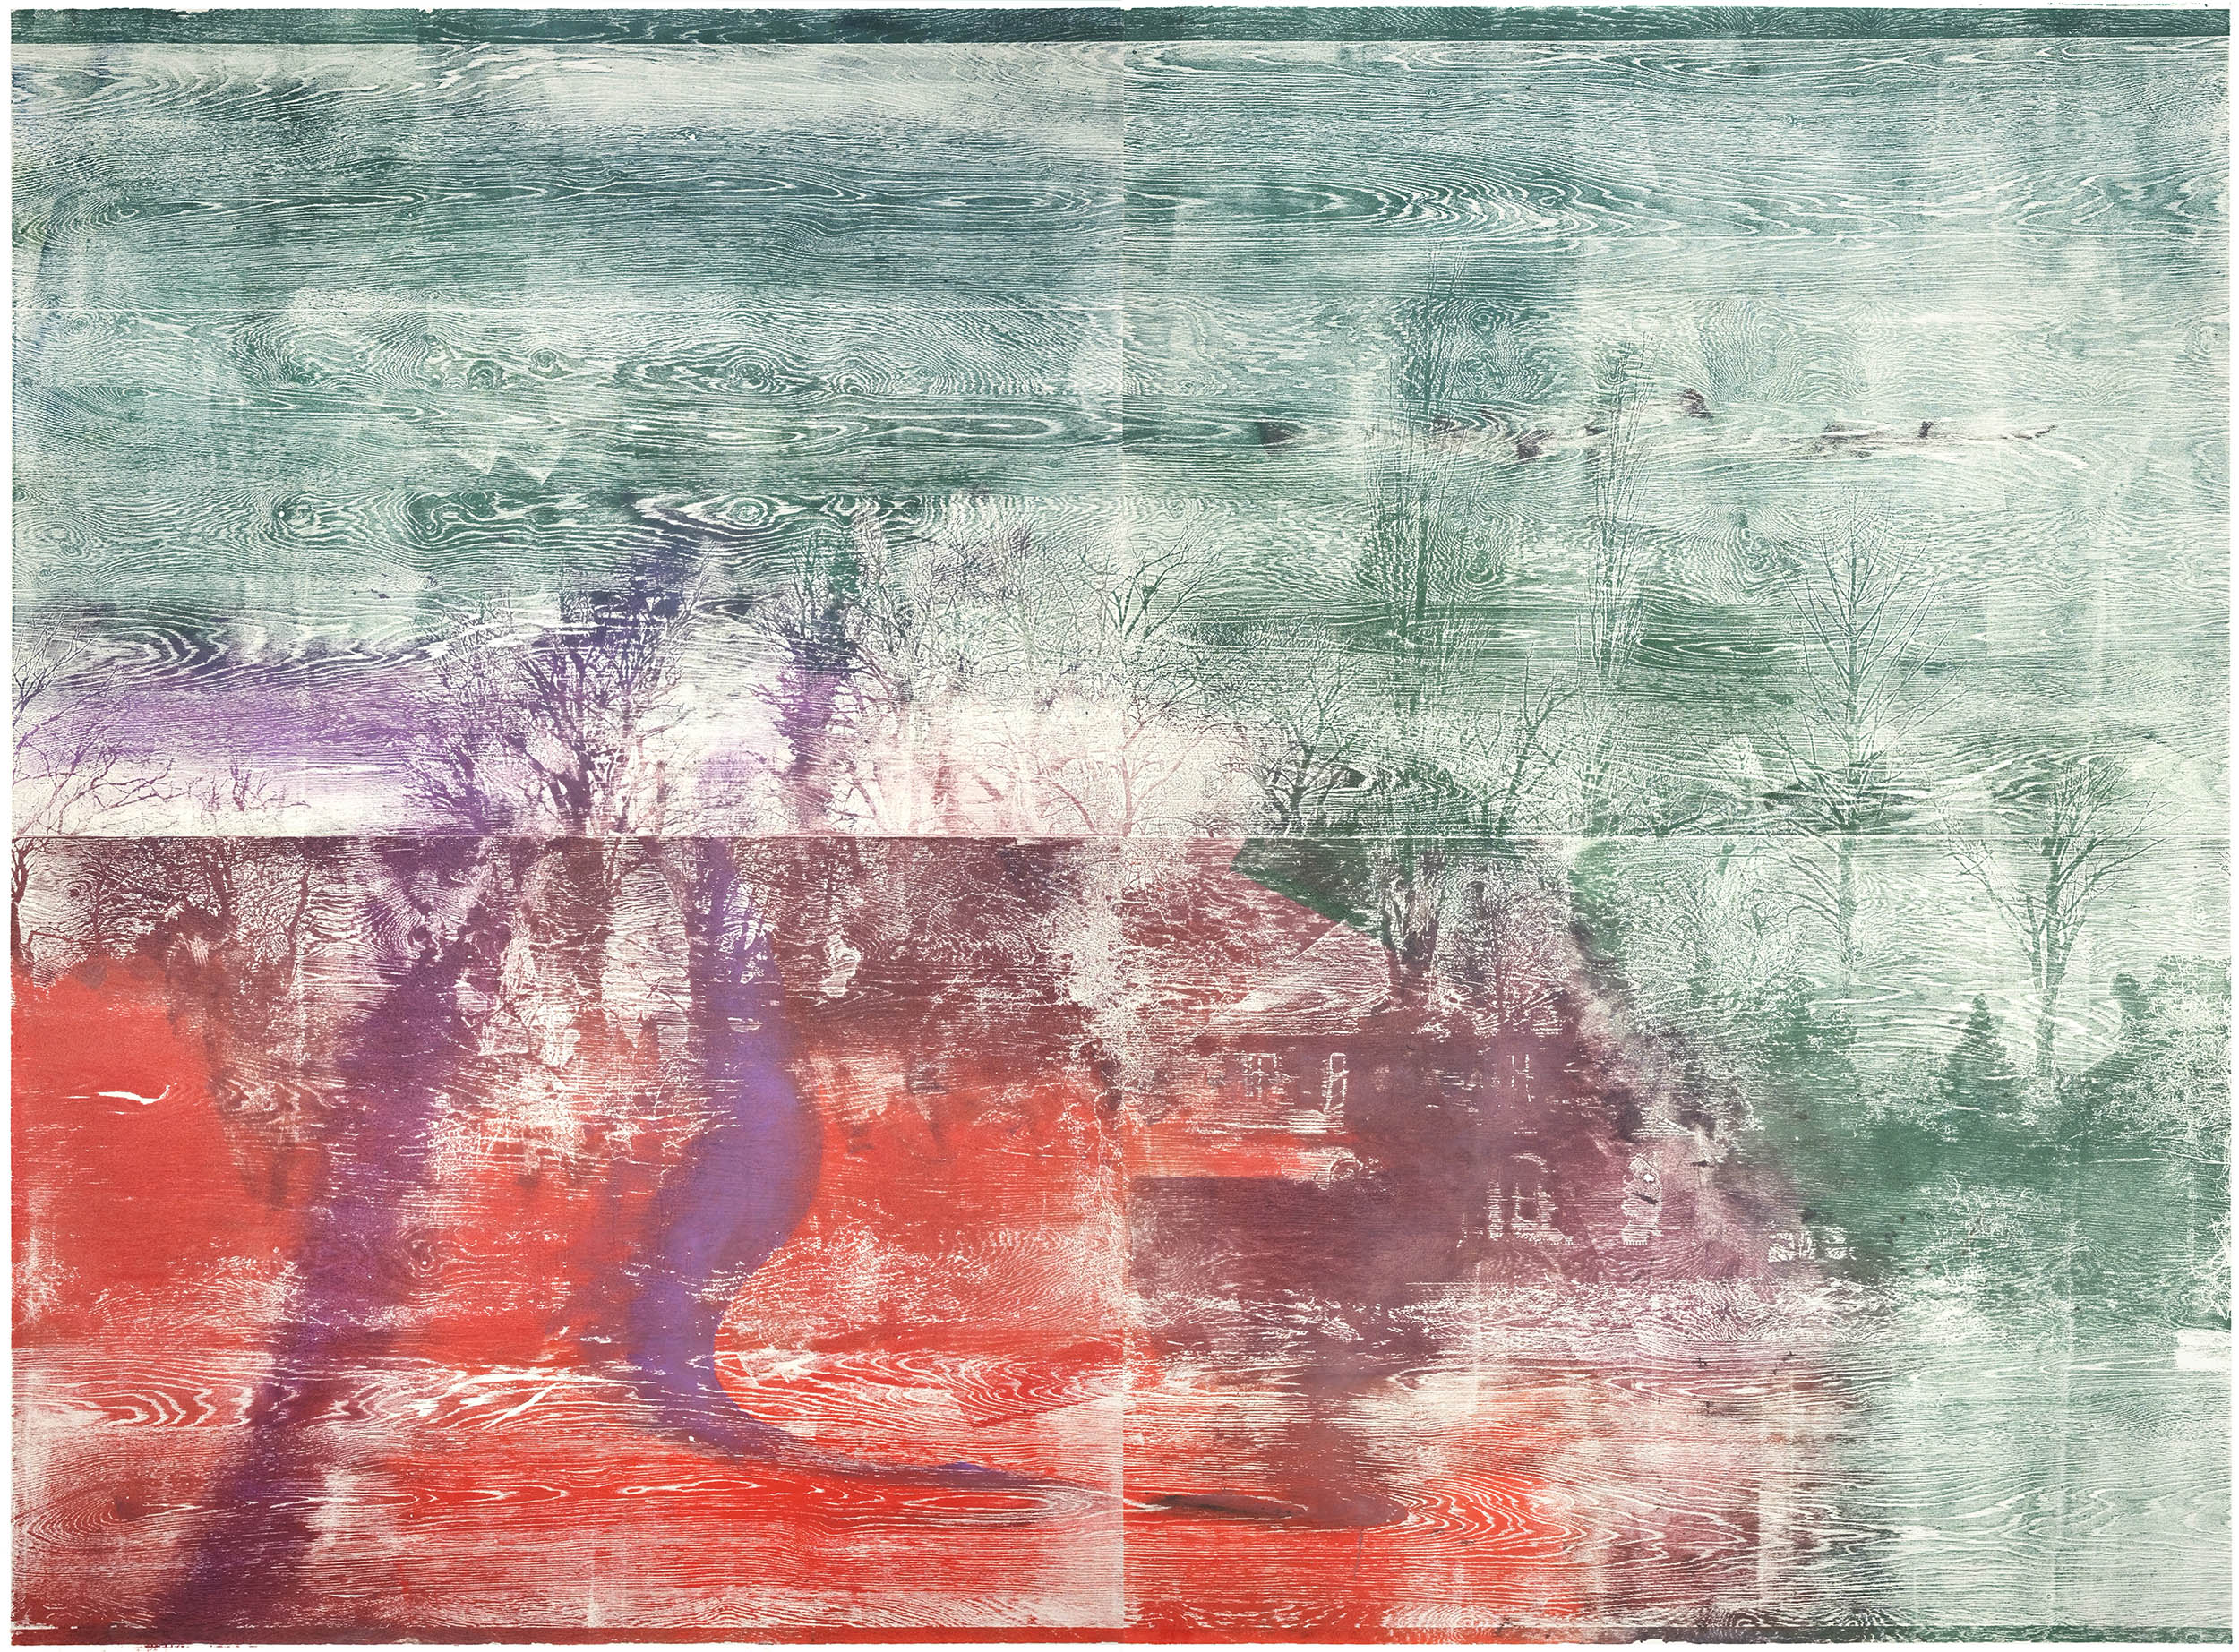 Die Ufer der Träume, 2022, wood engraving (walnut), 198,2 x 262,2 cm, Genaro Strobel